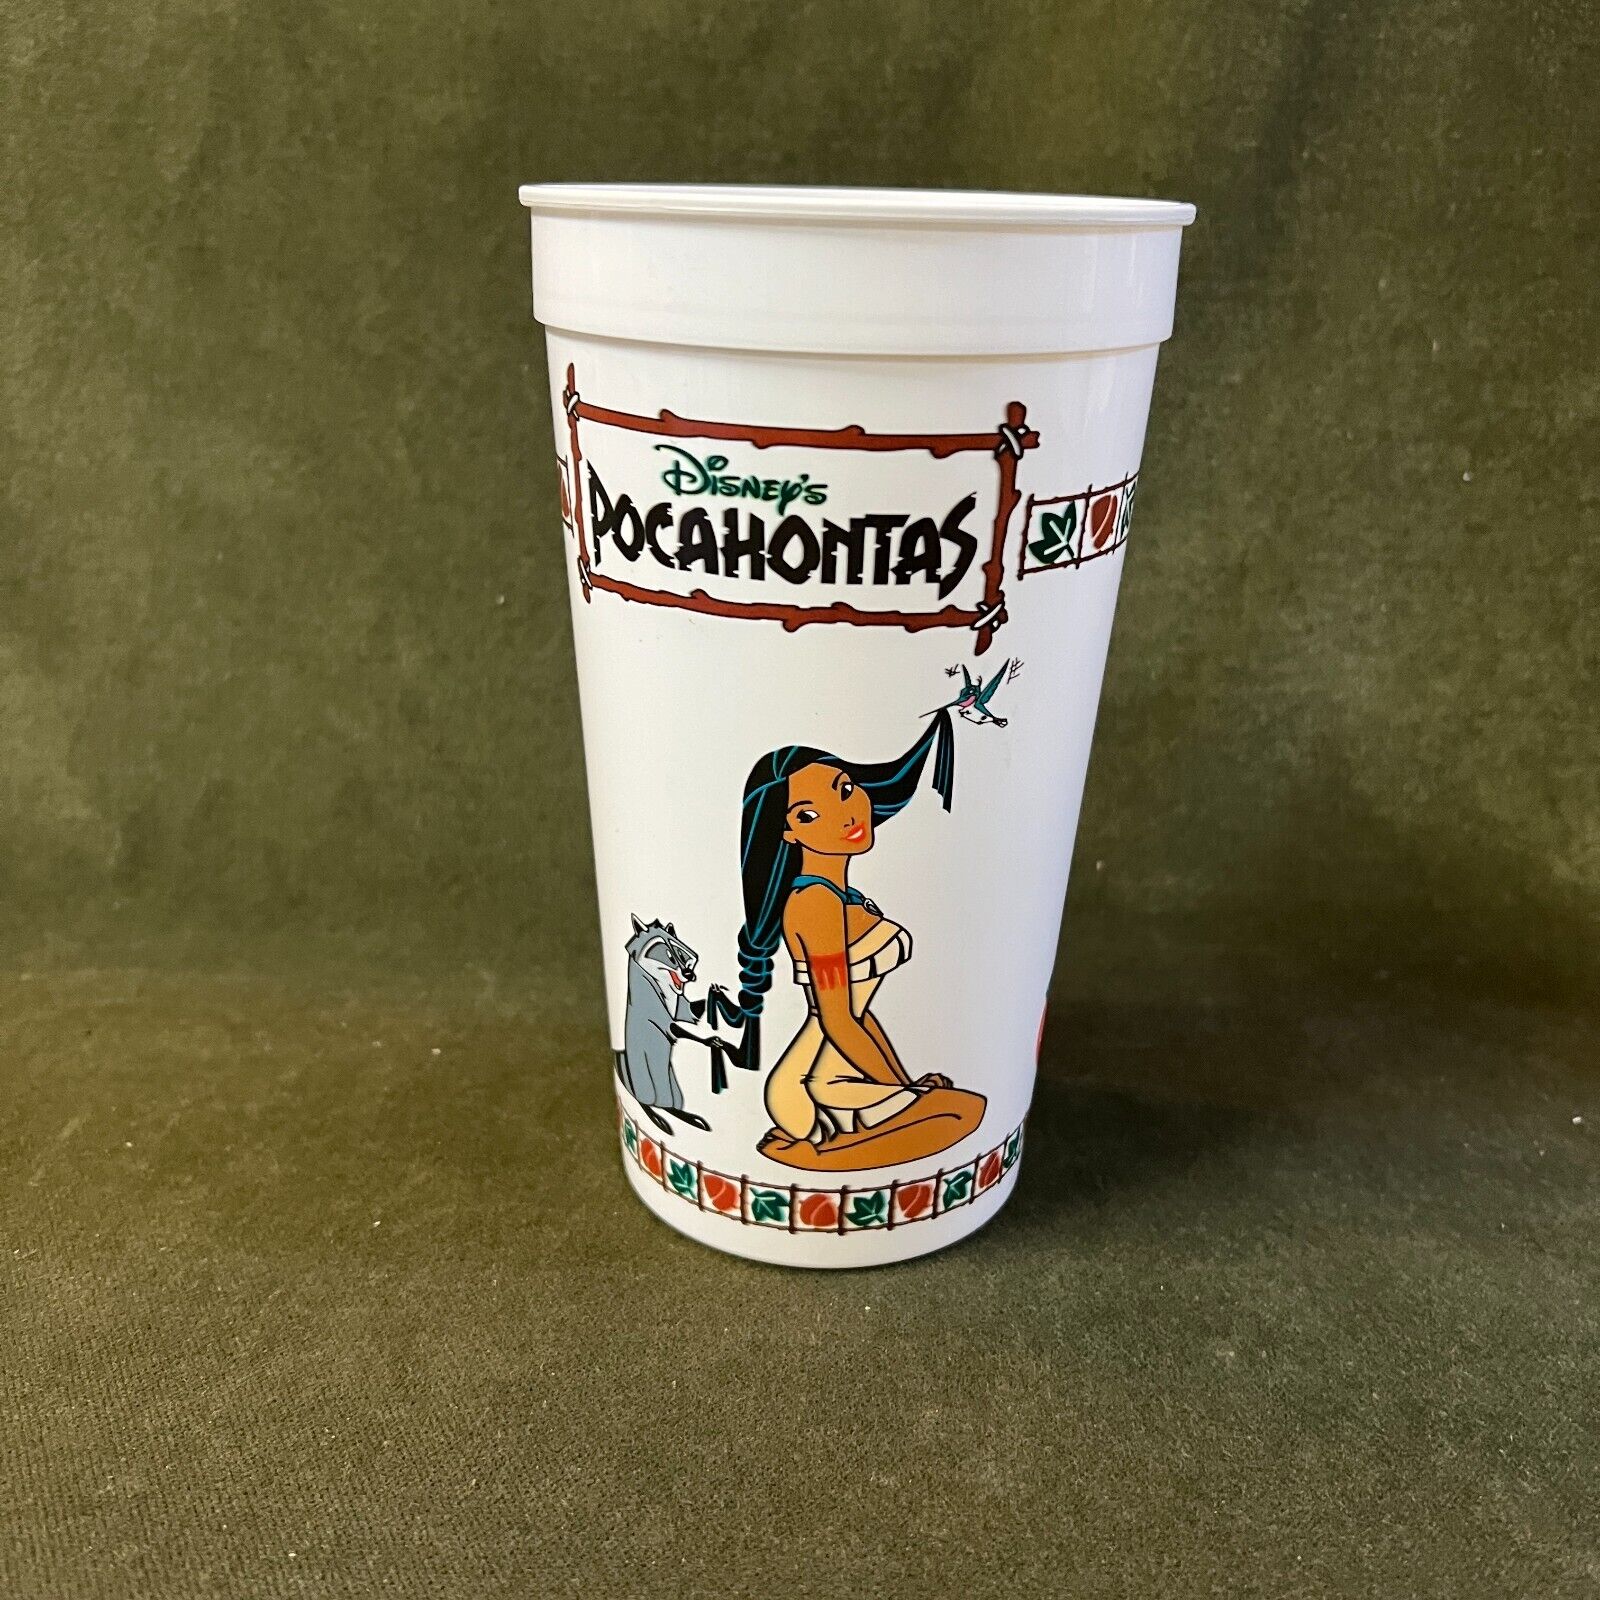 Disney Pocahontas & Chief Powhatan 32oz. Plastic Coca Cola Cup Vintage 1995